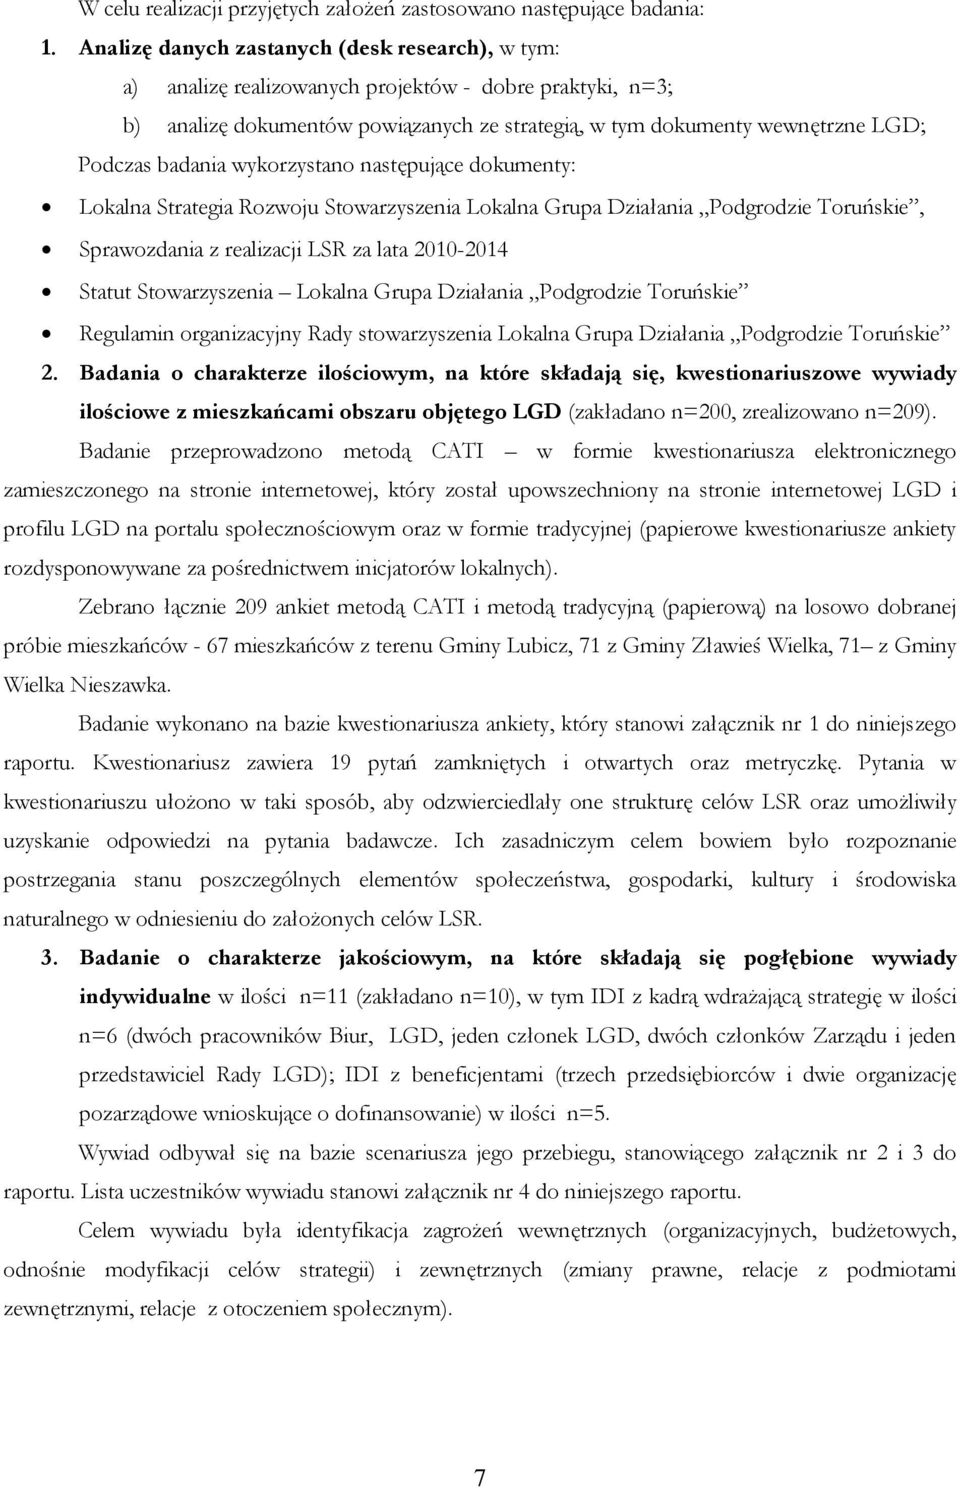 badania wykorzystano następujące dokumenty: Lokalna Strategia Rozwoju Stowarzyszenia Lokalna Grupa Działania Podgrodzie Toruńskie, Sprawozdania z realizacji LSR za lata 2010-2014 Statut